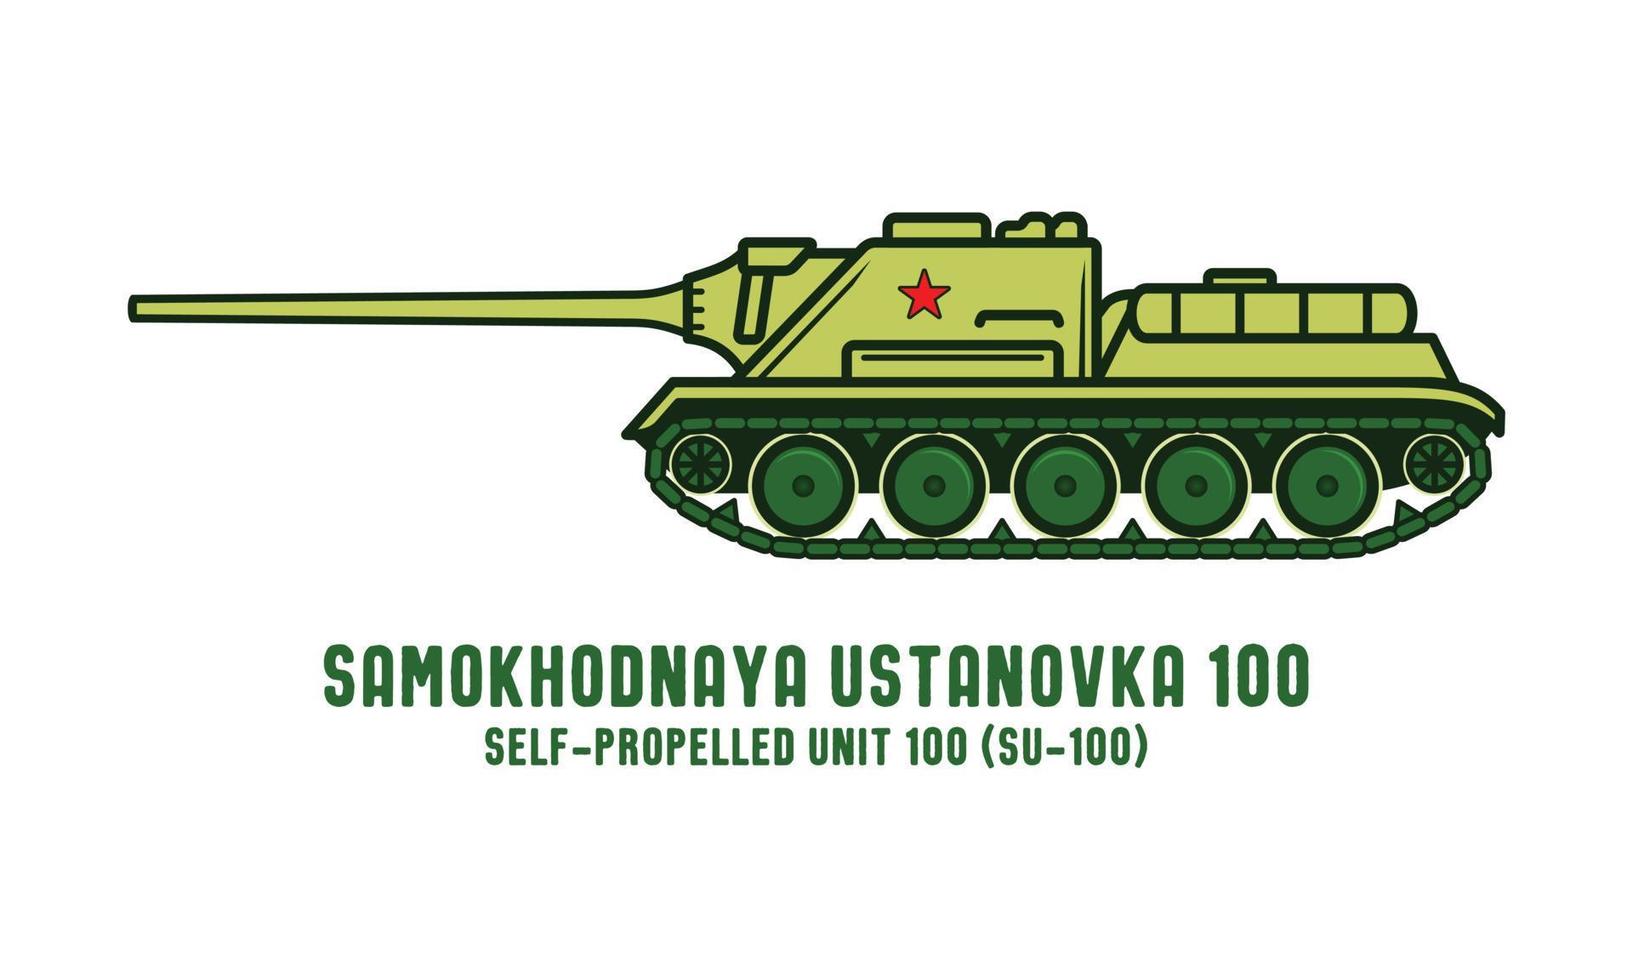 guerra mundial 2 samokhodnaya ustanovka 100 militar ruso tanque vector